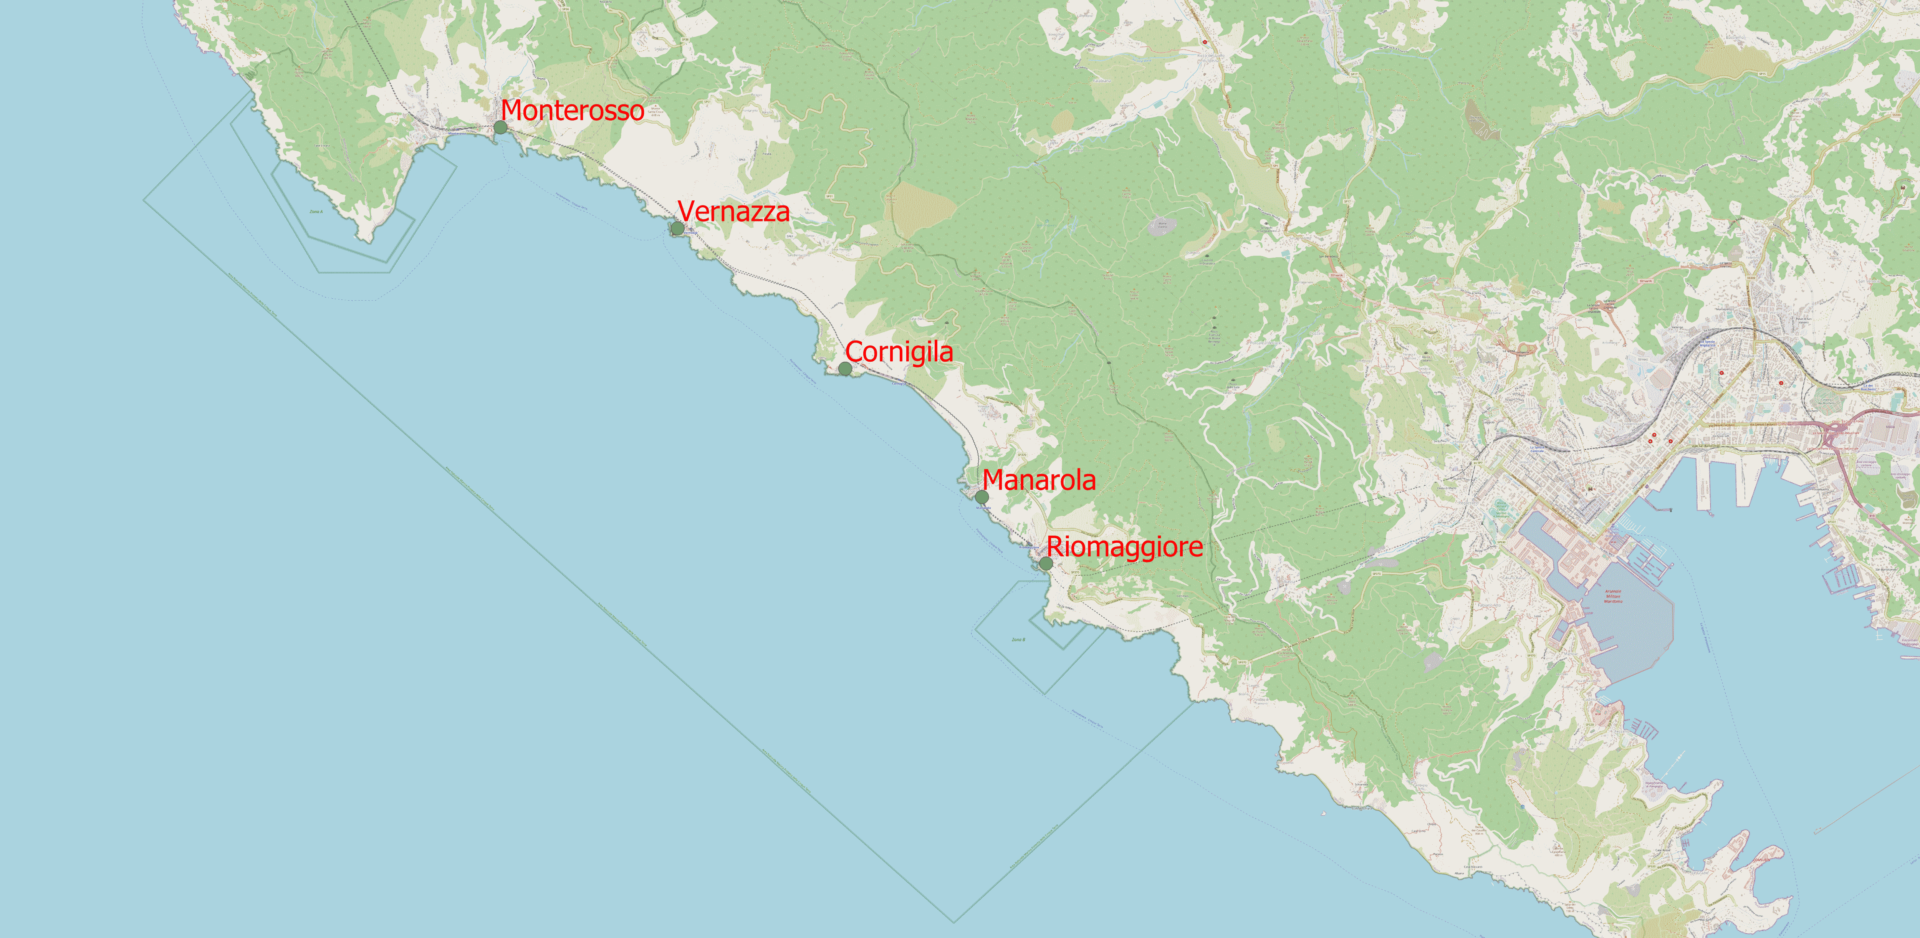 Green and blue map showcasing five Italian areas in red. These include 'Monterosso', 'Vernazza', 'Cornigilla', 'Manarola' and 'Riomaggiore'.